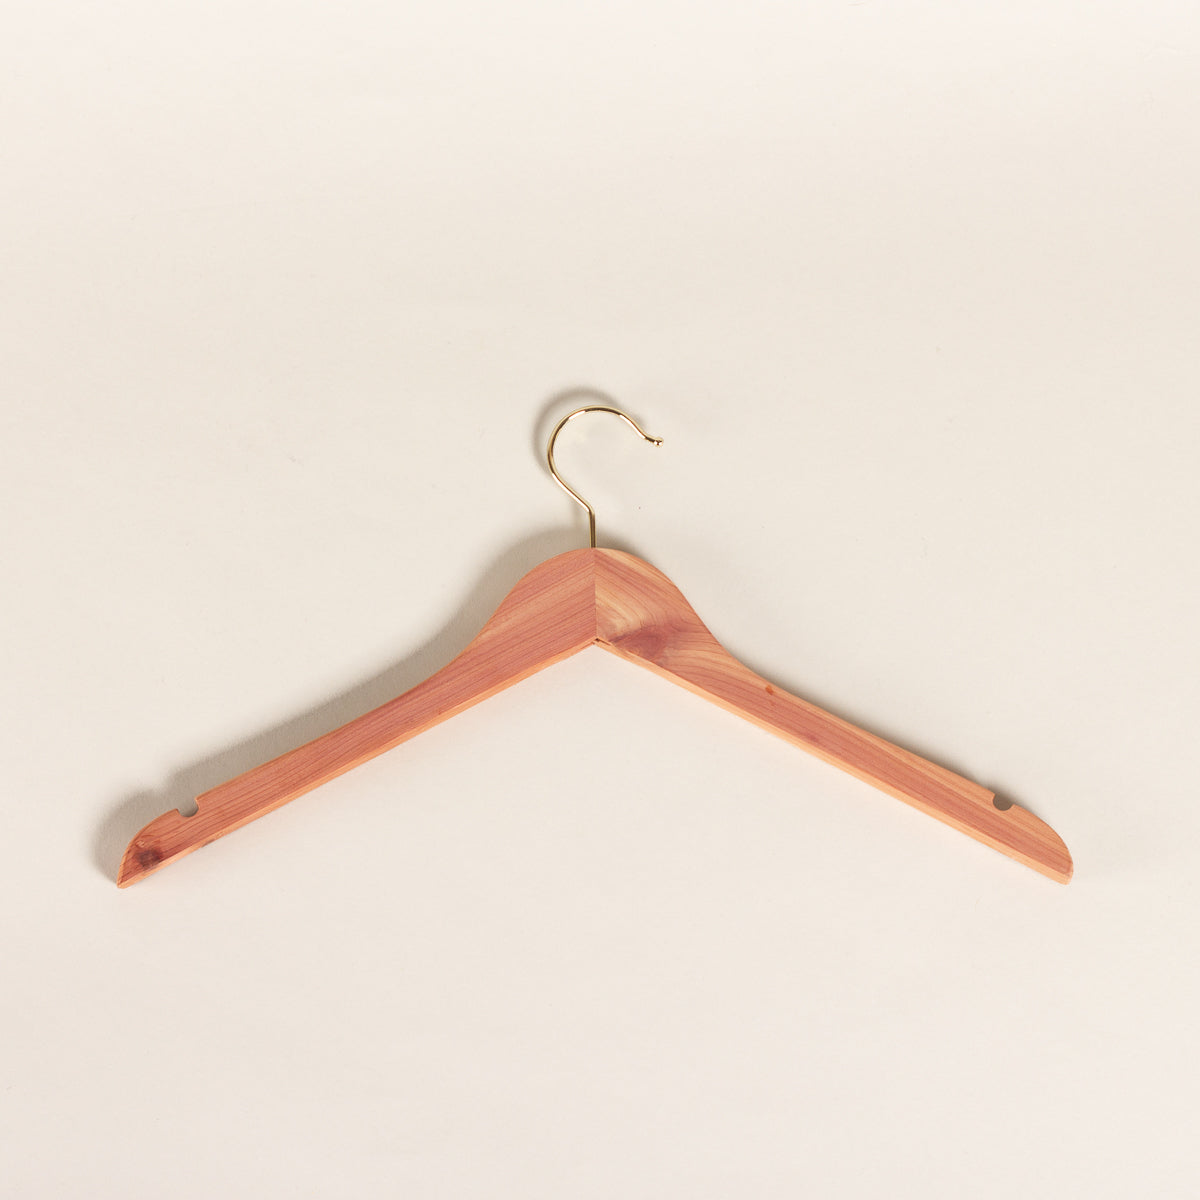 Cedar shirt hangers